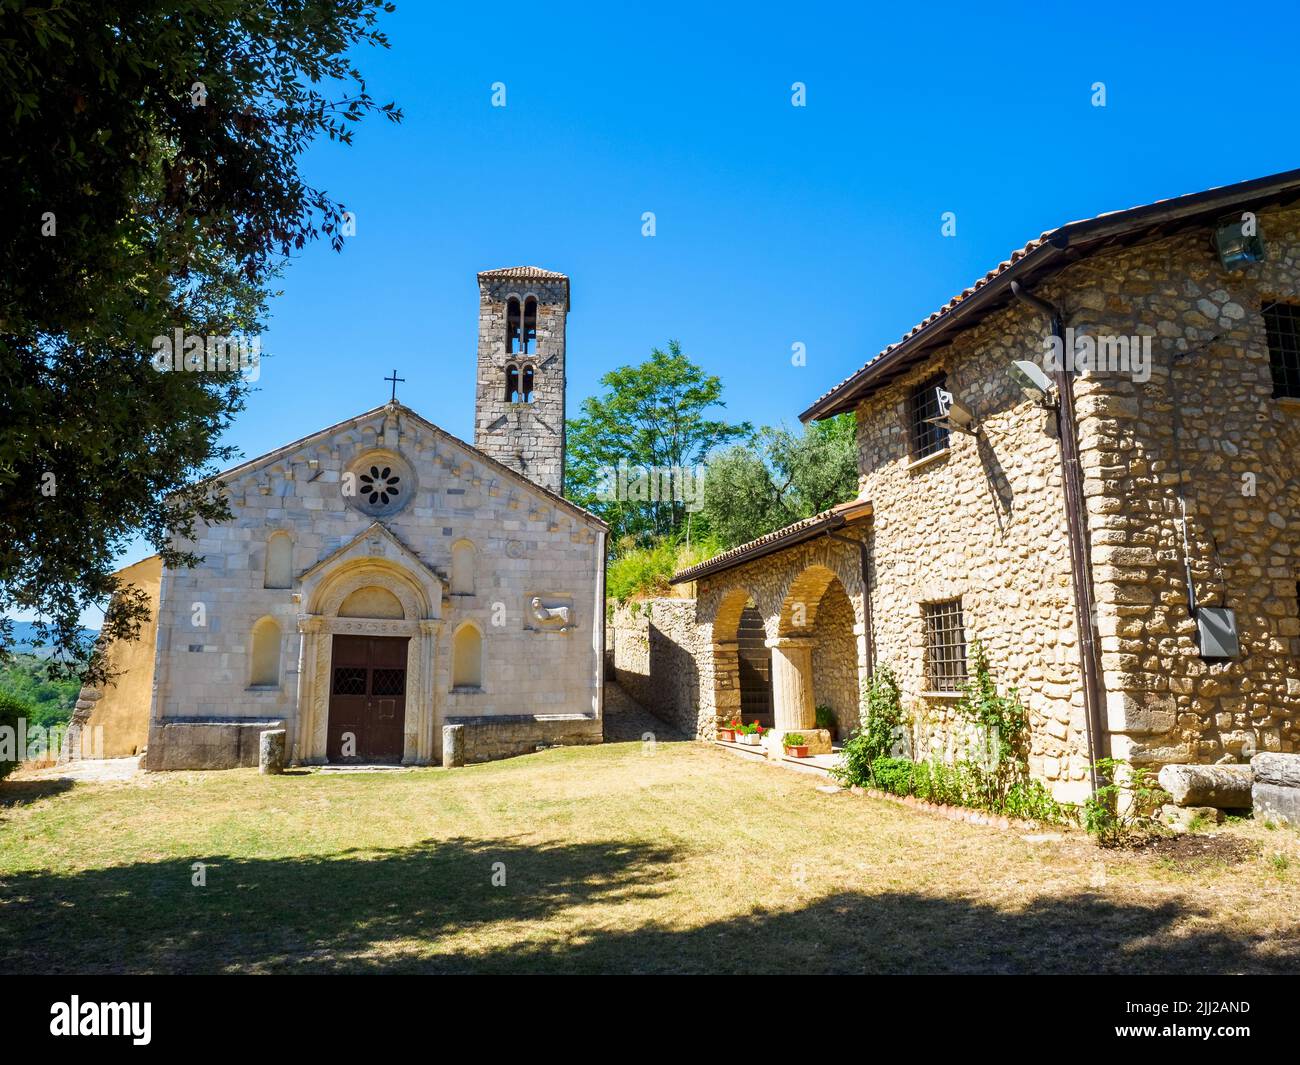 Sanctuaire de Santa Vittoria - Monteleone Sabino, Rieti, Italie Banque D'Images